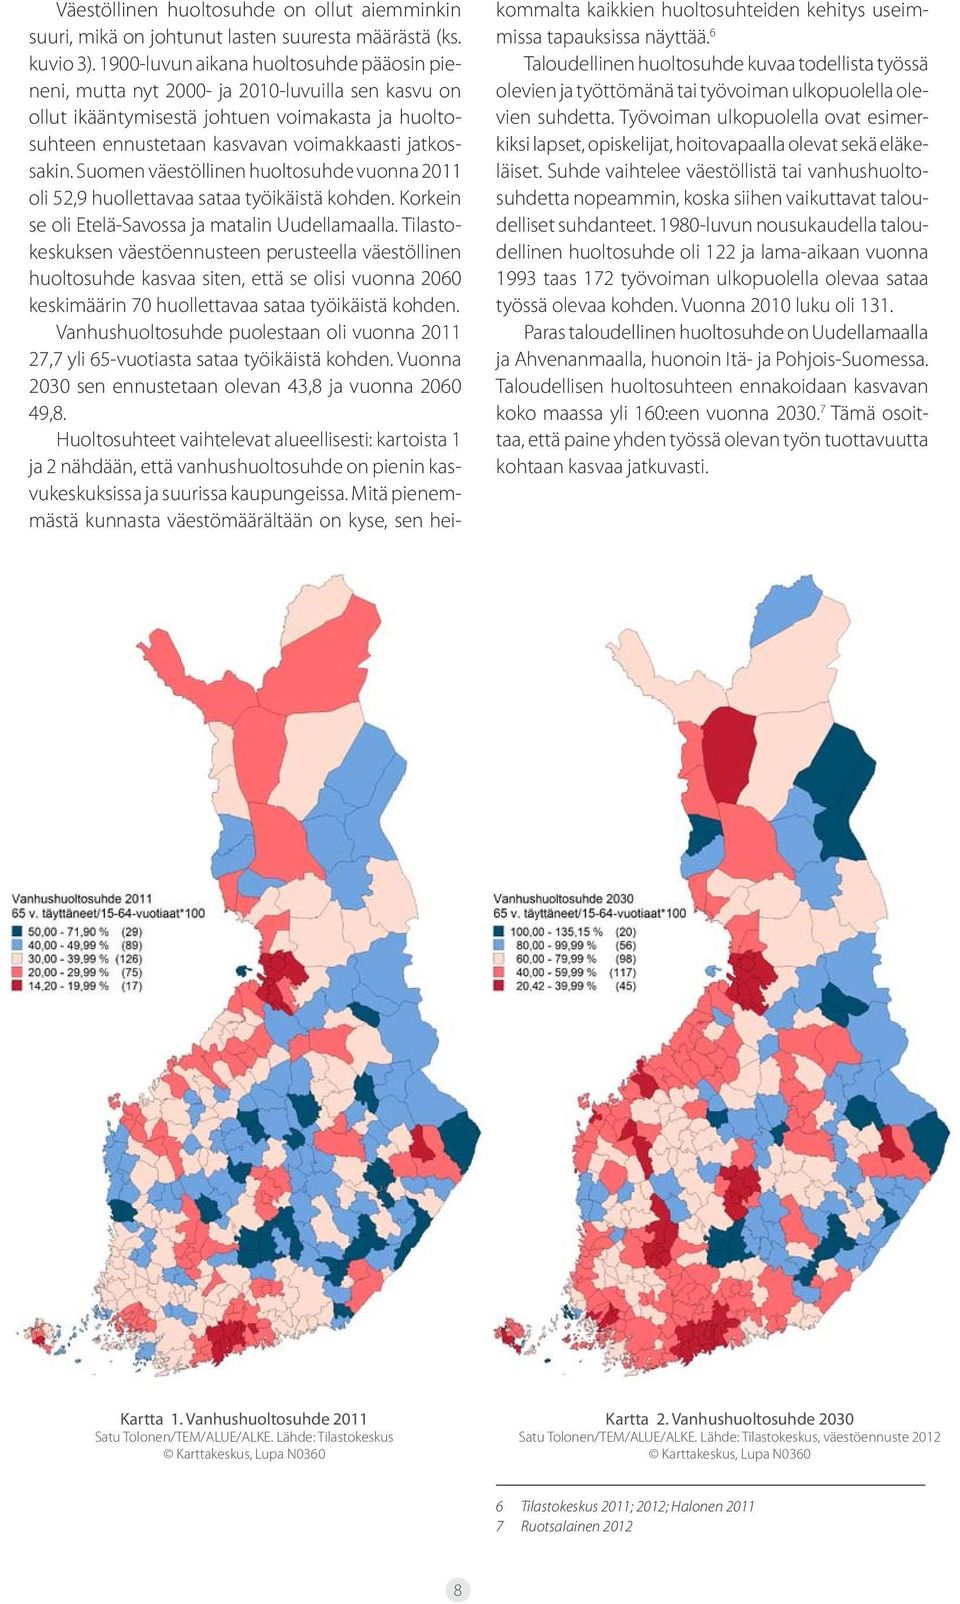 Suomen väestöllinen huoltosuhde vuonna 2011 oli 52,9 huollettavaa sataa työikäistä kohden. Korkein se oli Etelä-Savossa ja matalin Uudellamaalla.